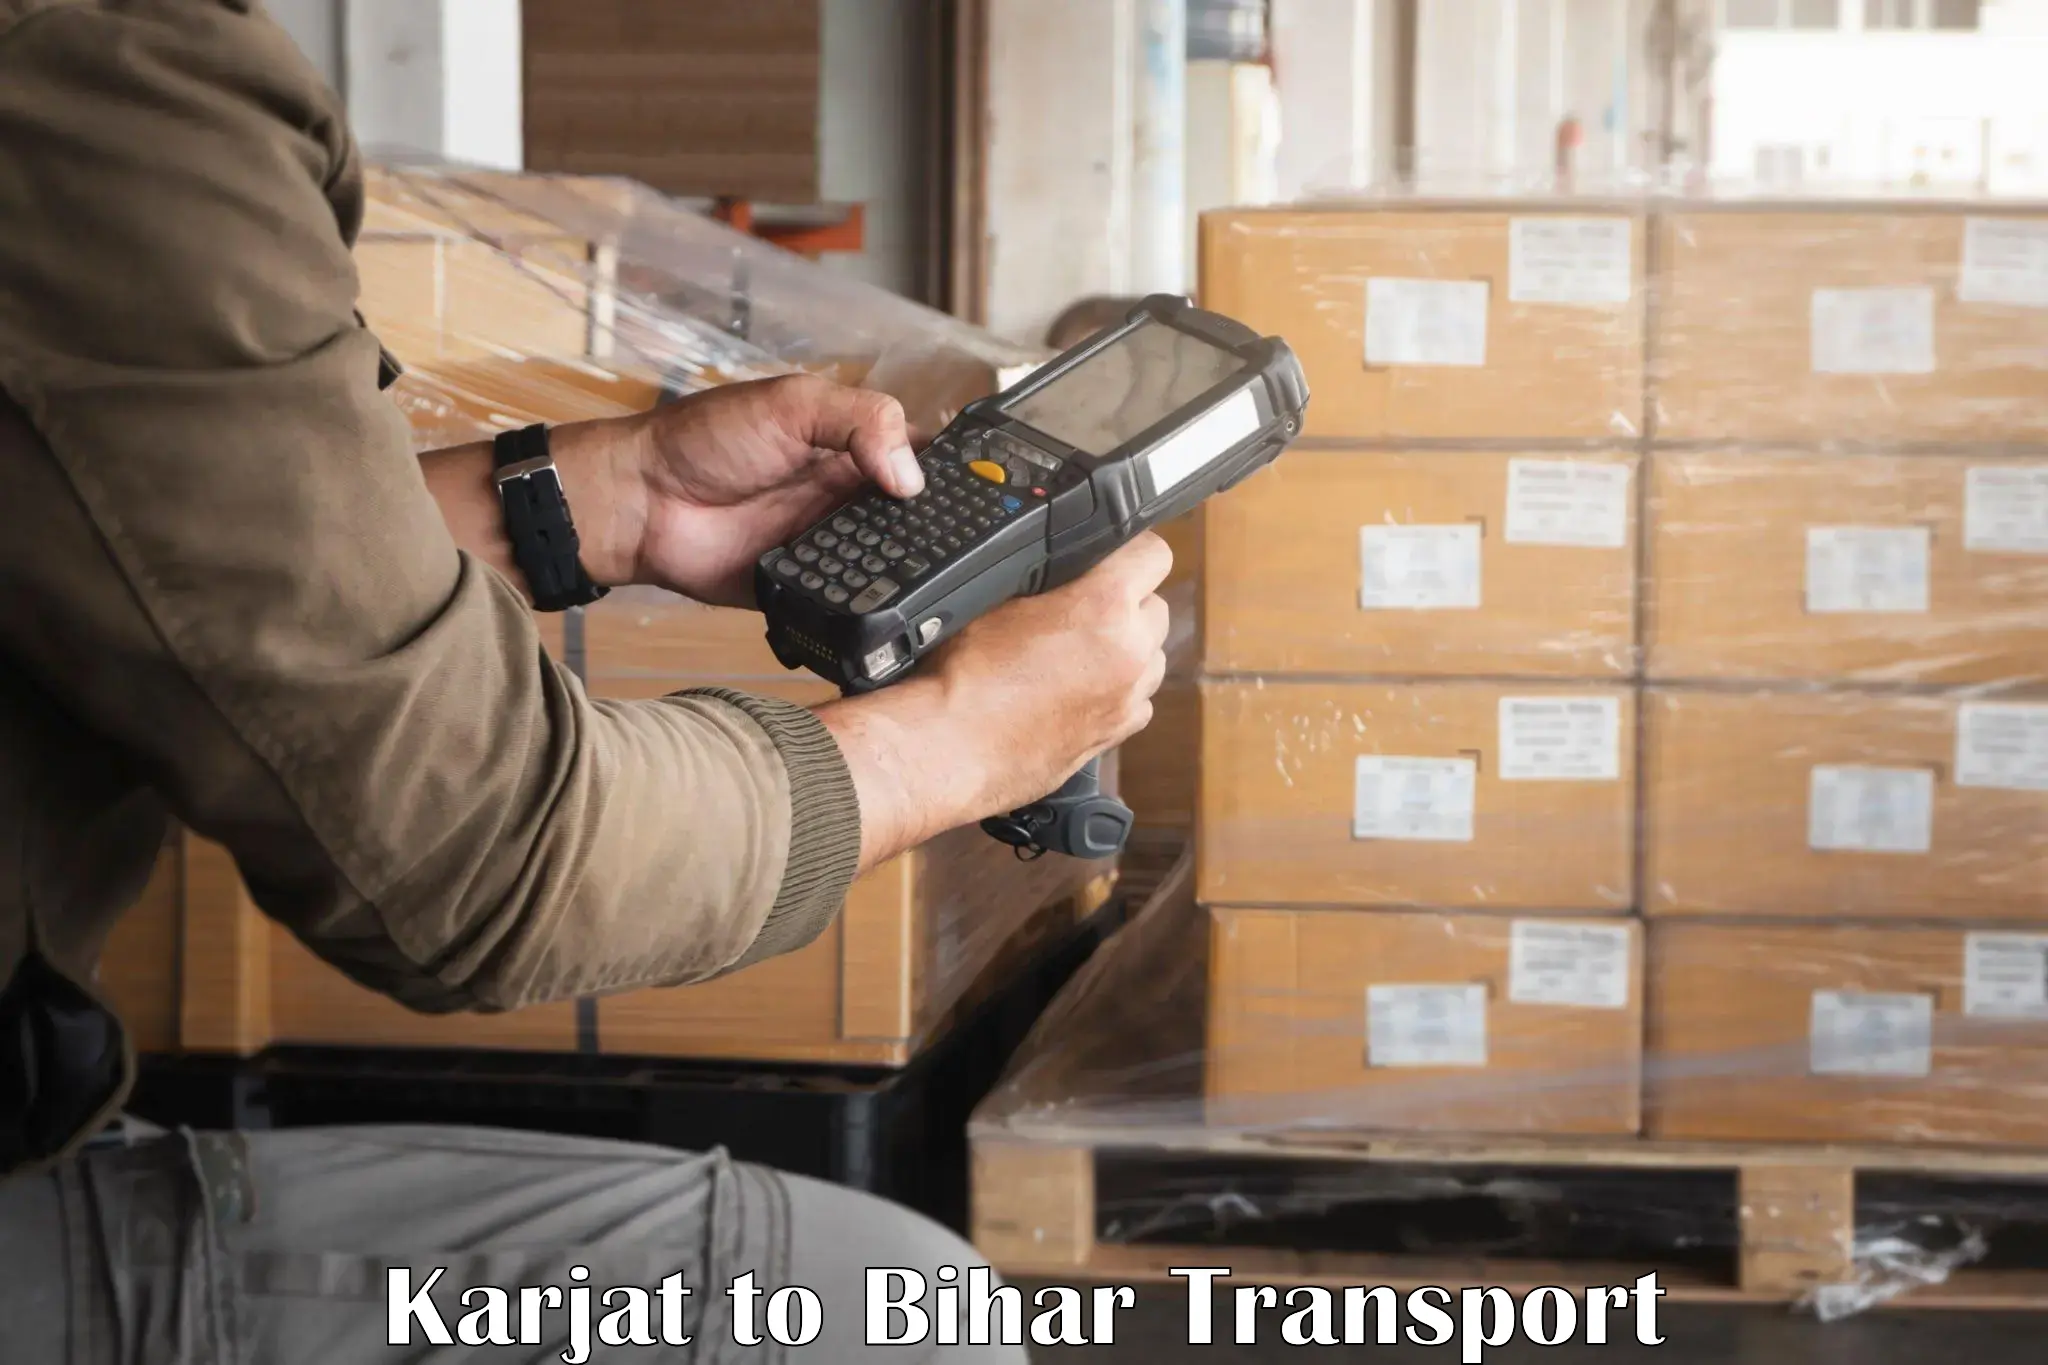 Parcel transport services Karjat to Bihar